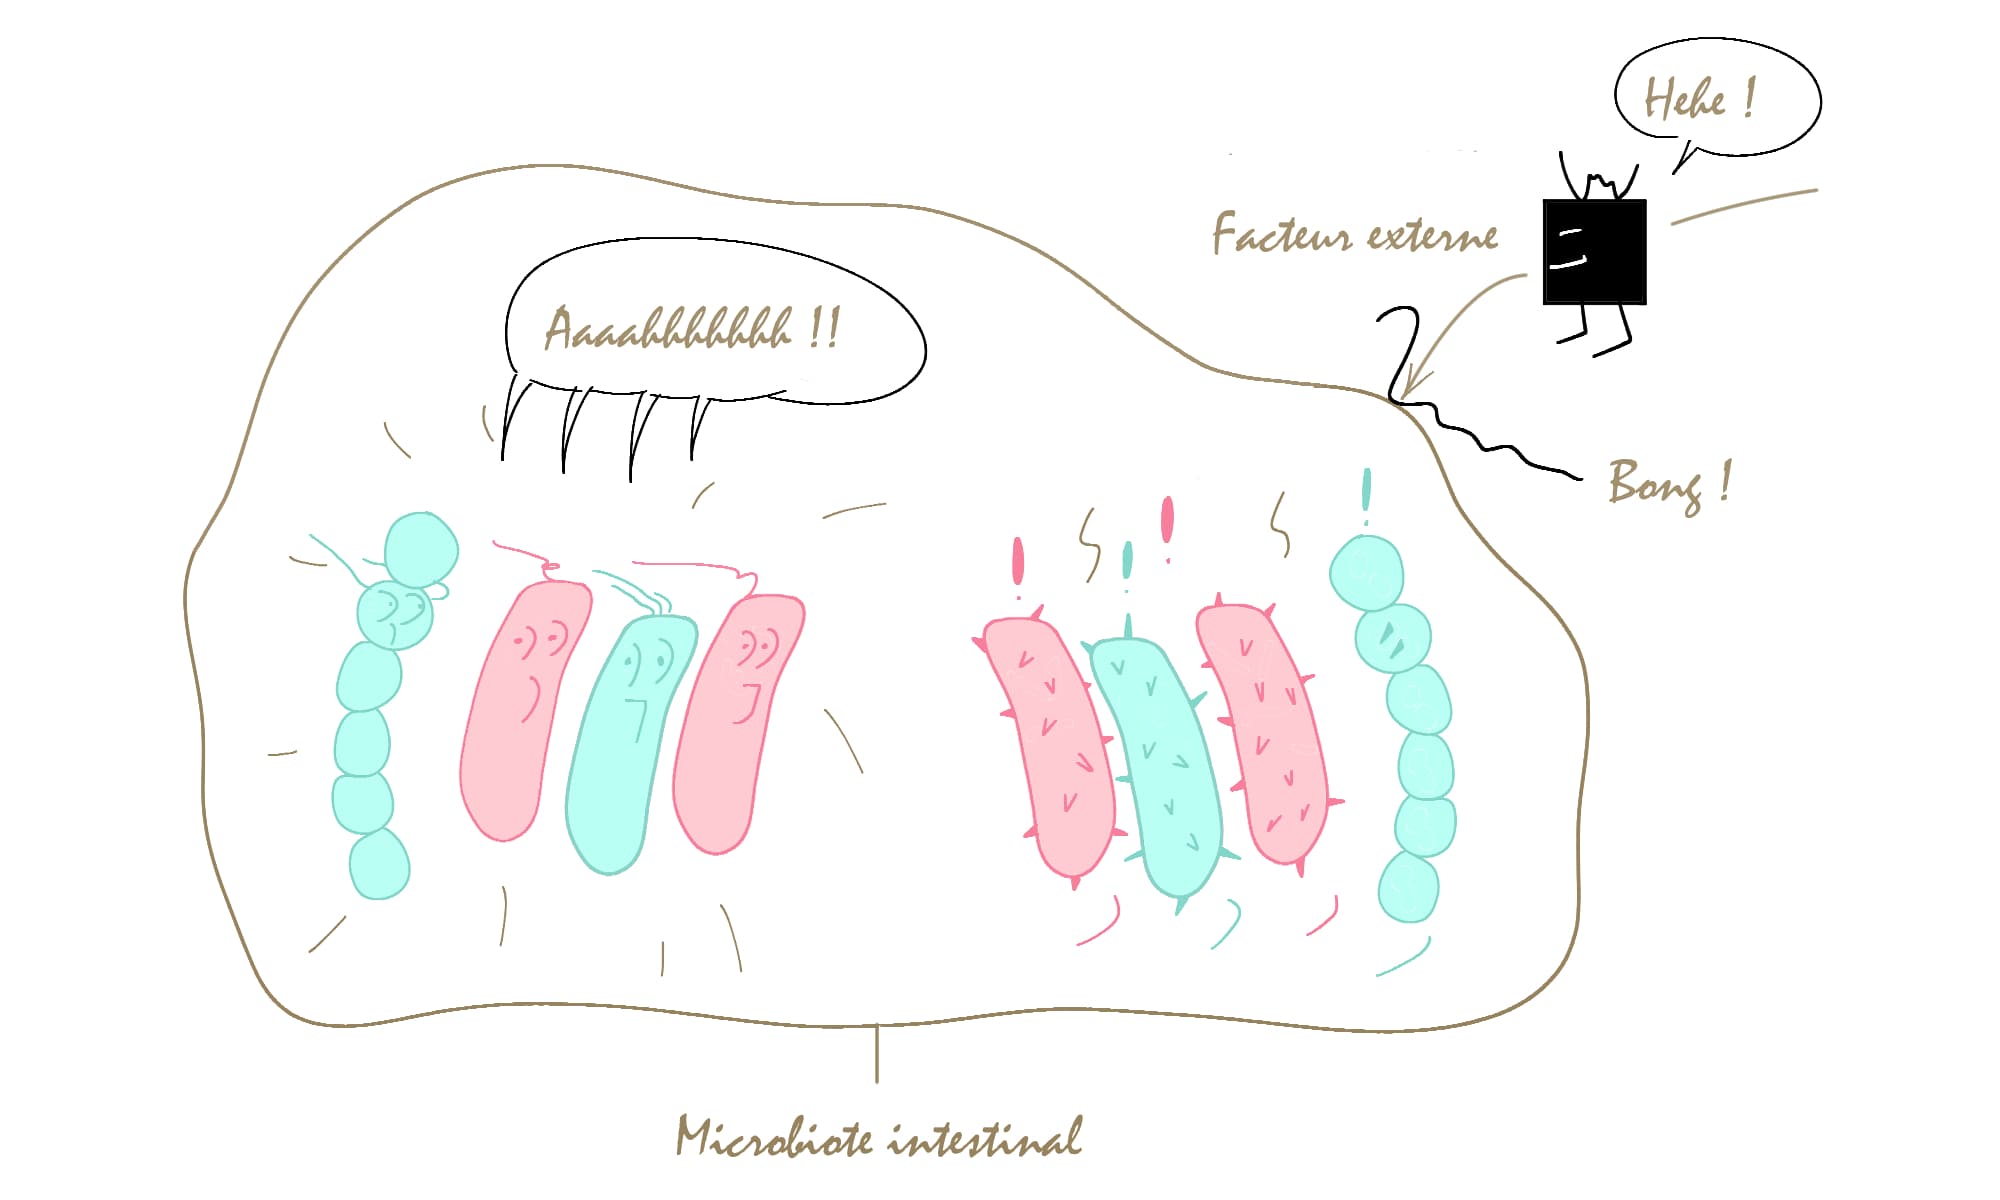 L'arrivée d'un facteur externe impact l'équilibre du microbiote intestinal